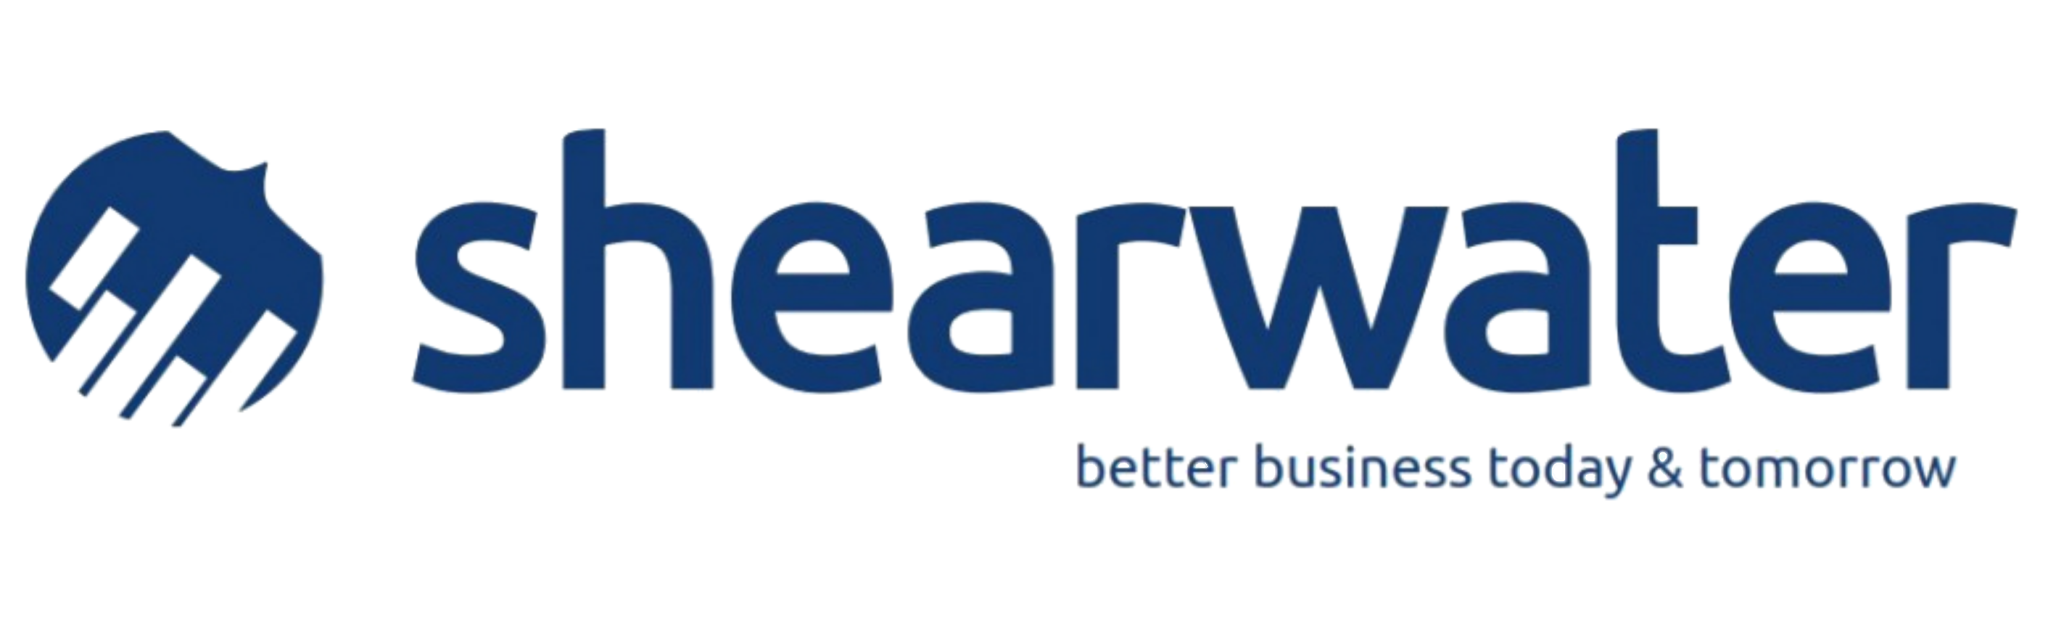 斯沃特|Shearwater-Oracle NetSuite五星合作伙伴，企业国际ERP系统实施专家。